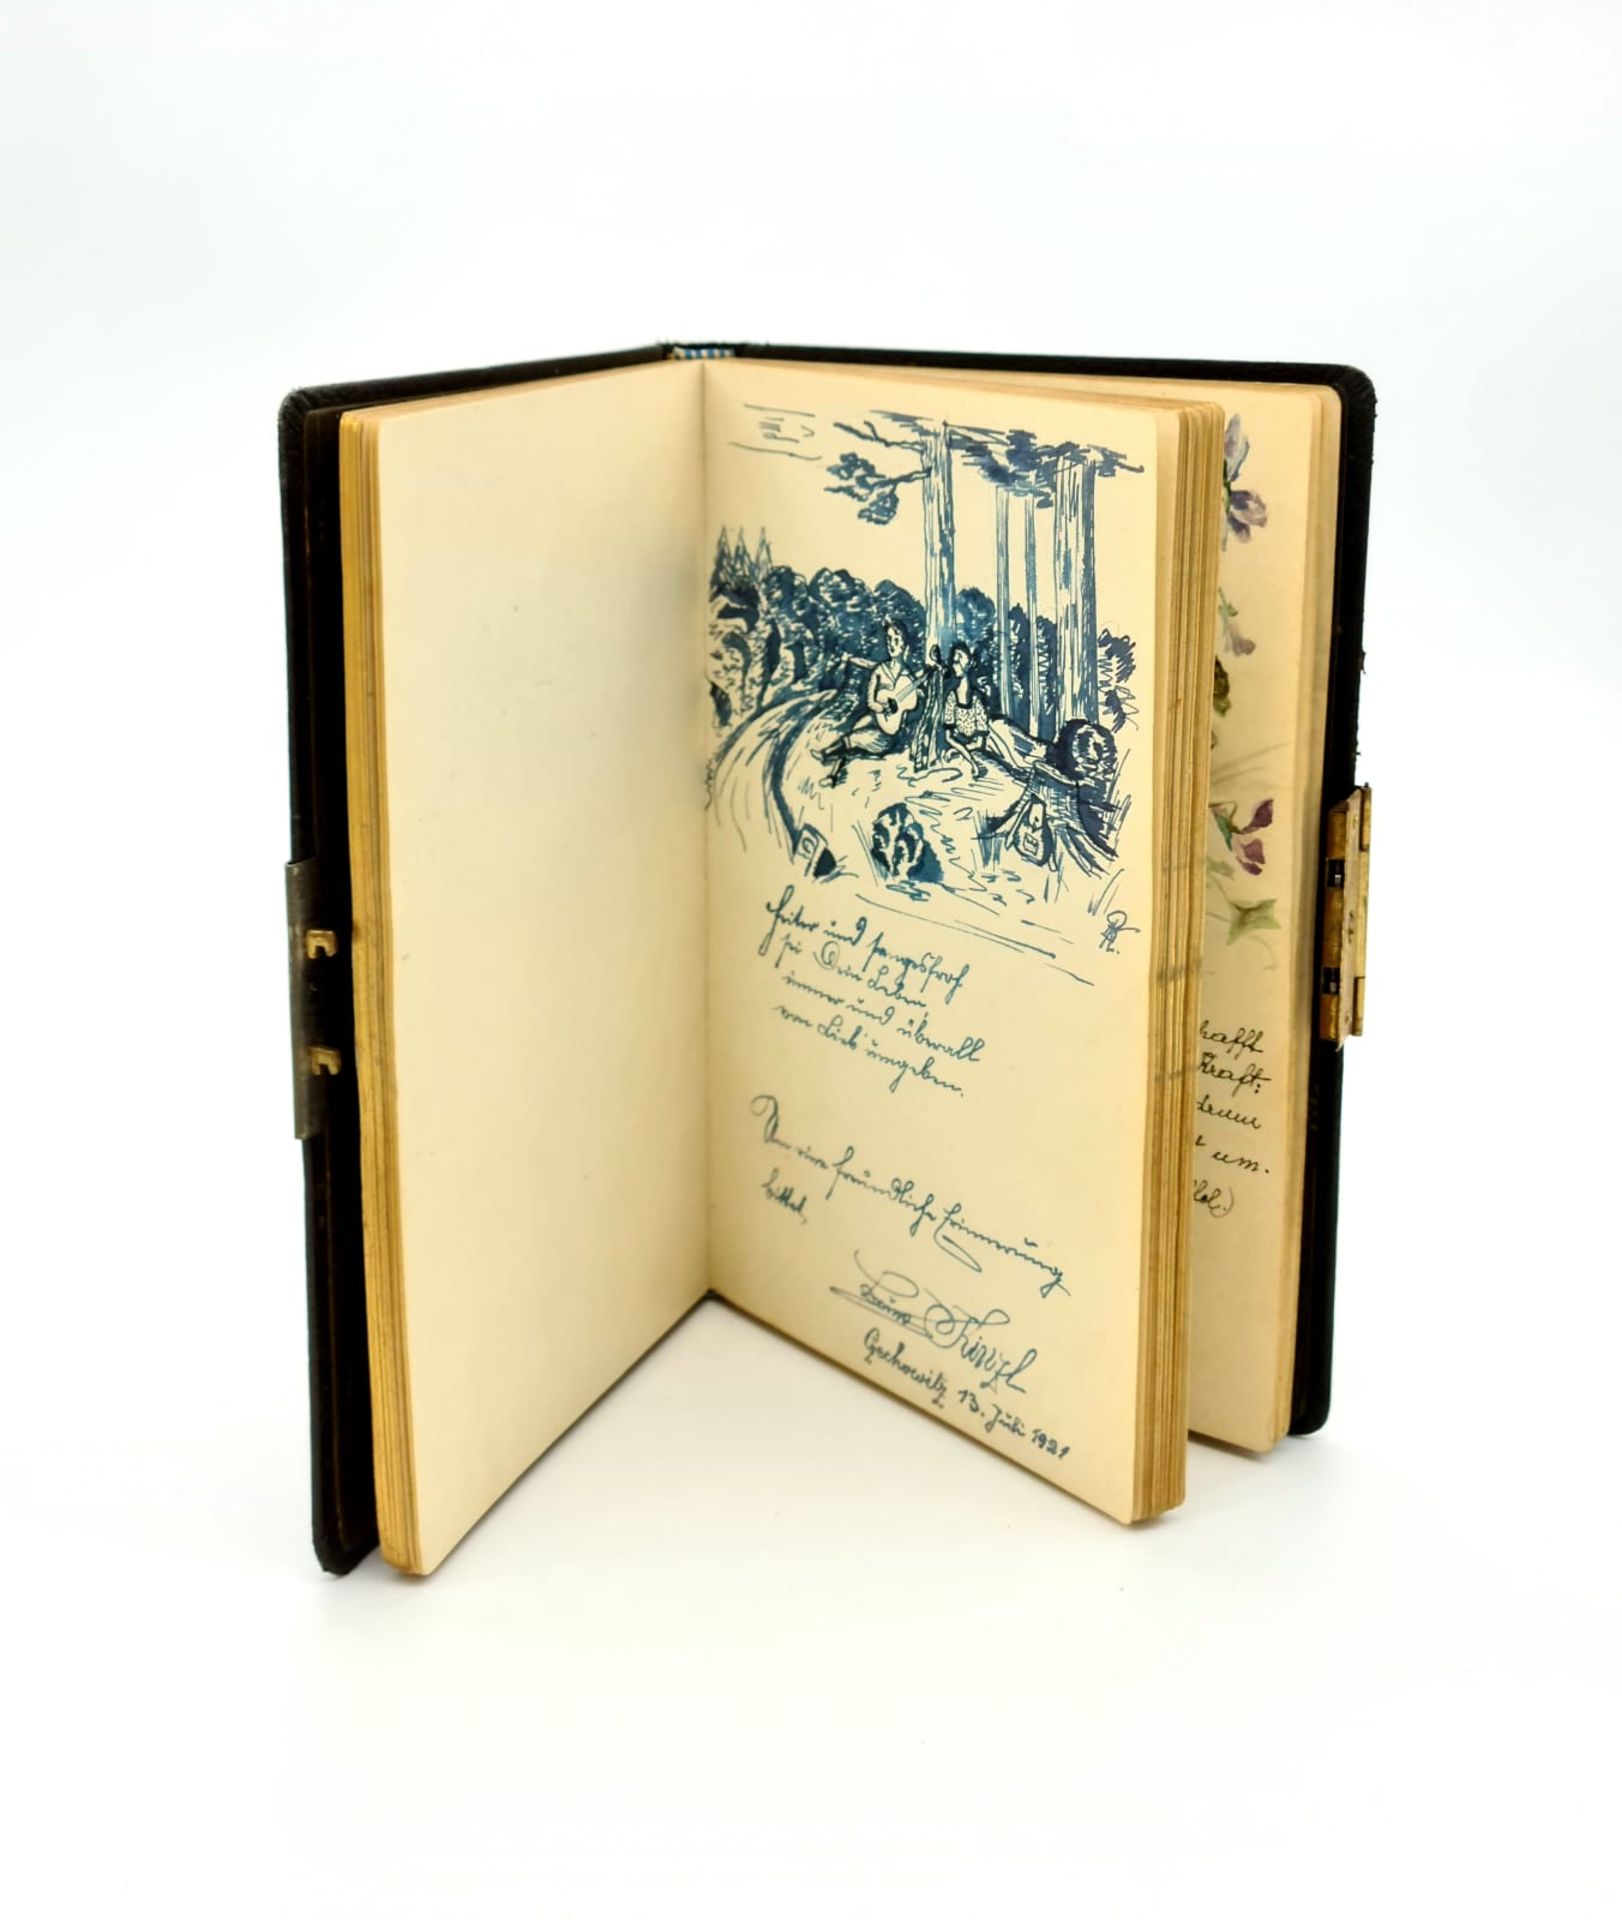 Poesiealbum aus den 1920er Jahren mit mehreren Aquarellen und Gedichten, Größe: ca. 19x13cm, - Image 6 of 6